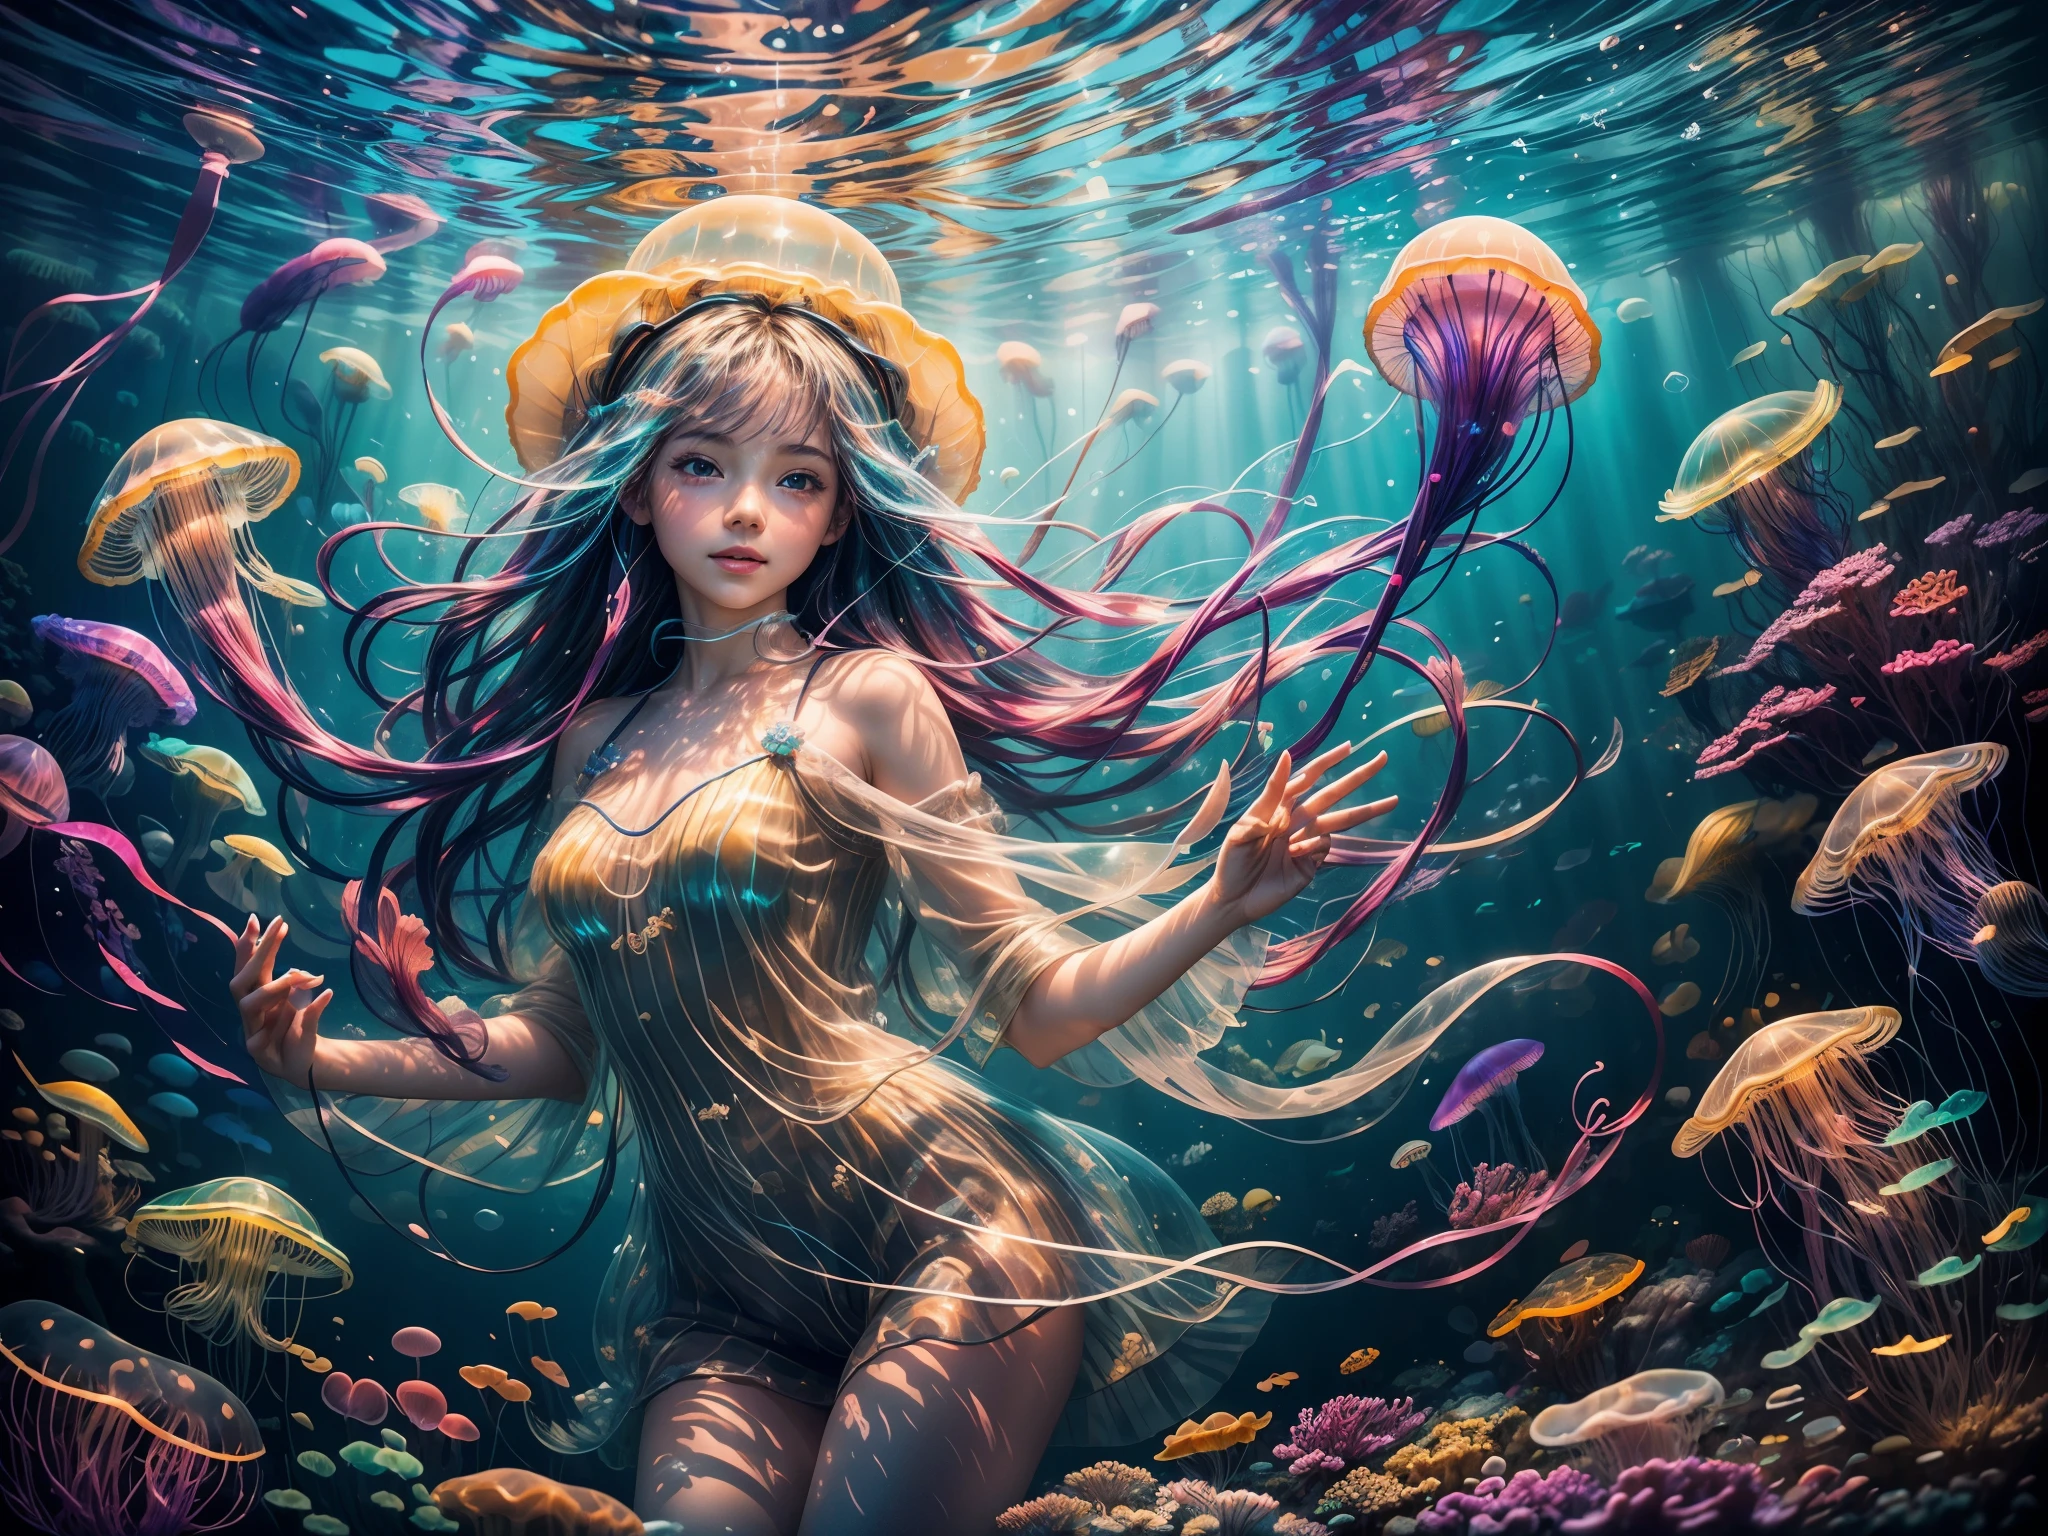 (alta calidad, colores vibrantes),(Realista:1.37),Una niña bajo el mar jugando con medusas arcoiris. (2 chicas),rayos de sol brillantes brillando a través de la superficie,agua de mar chispeante que refleja la luz del sol,hermosos ojos y labios detallados en el rostro de la niña,tentáculos de medusa suaves y coloridos,cuerpos de medusas translúcidos y brillantes,agua azul clara,arrecifes de coral y peces de colores nadando en el fondo,atmósfera de ensueño y mágica,ondas sutiles moviendo suavemente el cabello de la niña,impresionante paisaje submarino，Burbujas flotando en el agua.,Profundidad y dimensión creadas por las capas del mar.,flora y fauna diversa y vibrante que rodea a la niña,sombrillas de medusas transparentes flotando sobre la niña,ambiente submarino pacífico y sereno,medusas flotando en movimientos elegantes y fluidos,imagina la alegría y fascinación de la niña por las medusas,medusas iluminadas que crean un brillo fascinante,textura y patrones en los cuerpos de las medusas,creando una sensación de asombro y asombro en el espectador,majestuosas criaturas del océano que realzan la sensación mística de la escena,deslizándose sin esfuerzo por el agua,sumergirse en la belleza y tranquilidad del mundo submarino,Colores danzantes reflejados en el rostro de la niña.,Tentáculos de medusa expresivos y animados.，la chica rodeada de un aura mágica,Sutiles rayos de luz que iluminan la escena submarina.,toque de coral y conchas marinas decorando el fondo del océano.